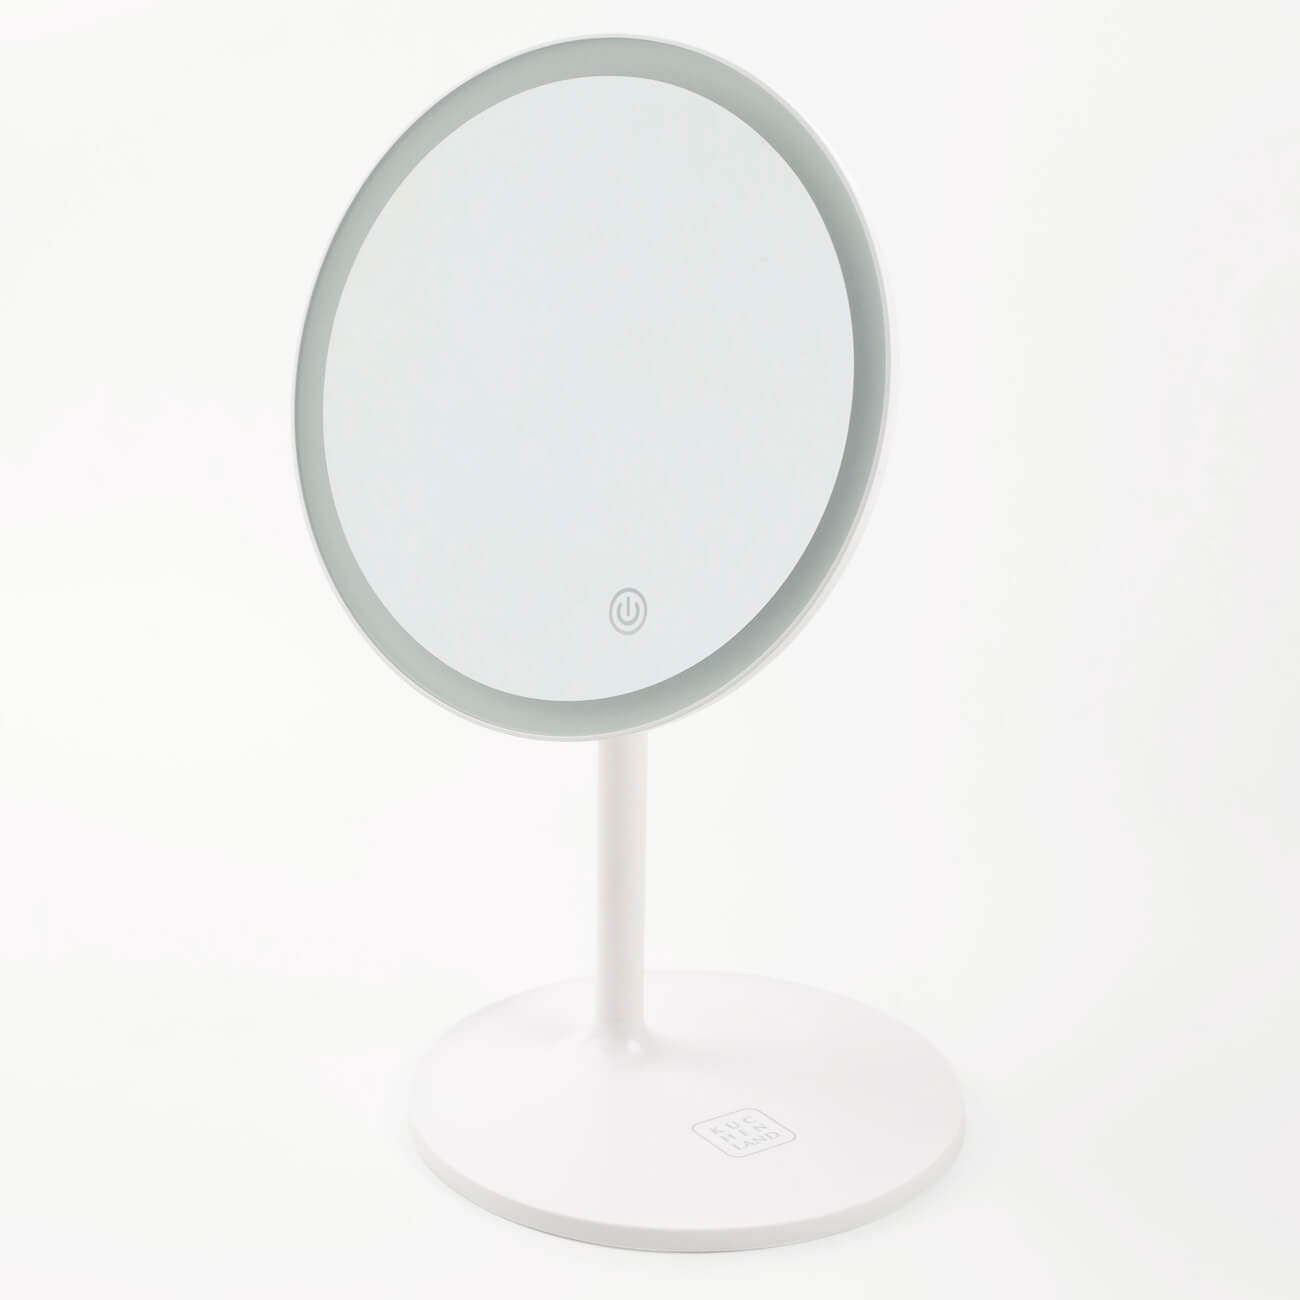 Зеркало настольное, 33 см, с подсветкой, на подставке, пластик, круглое, белое, Vesta настольное косметическое зеркало vanstore